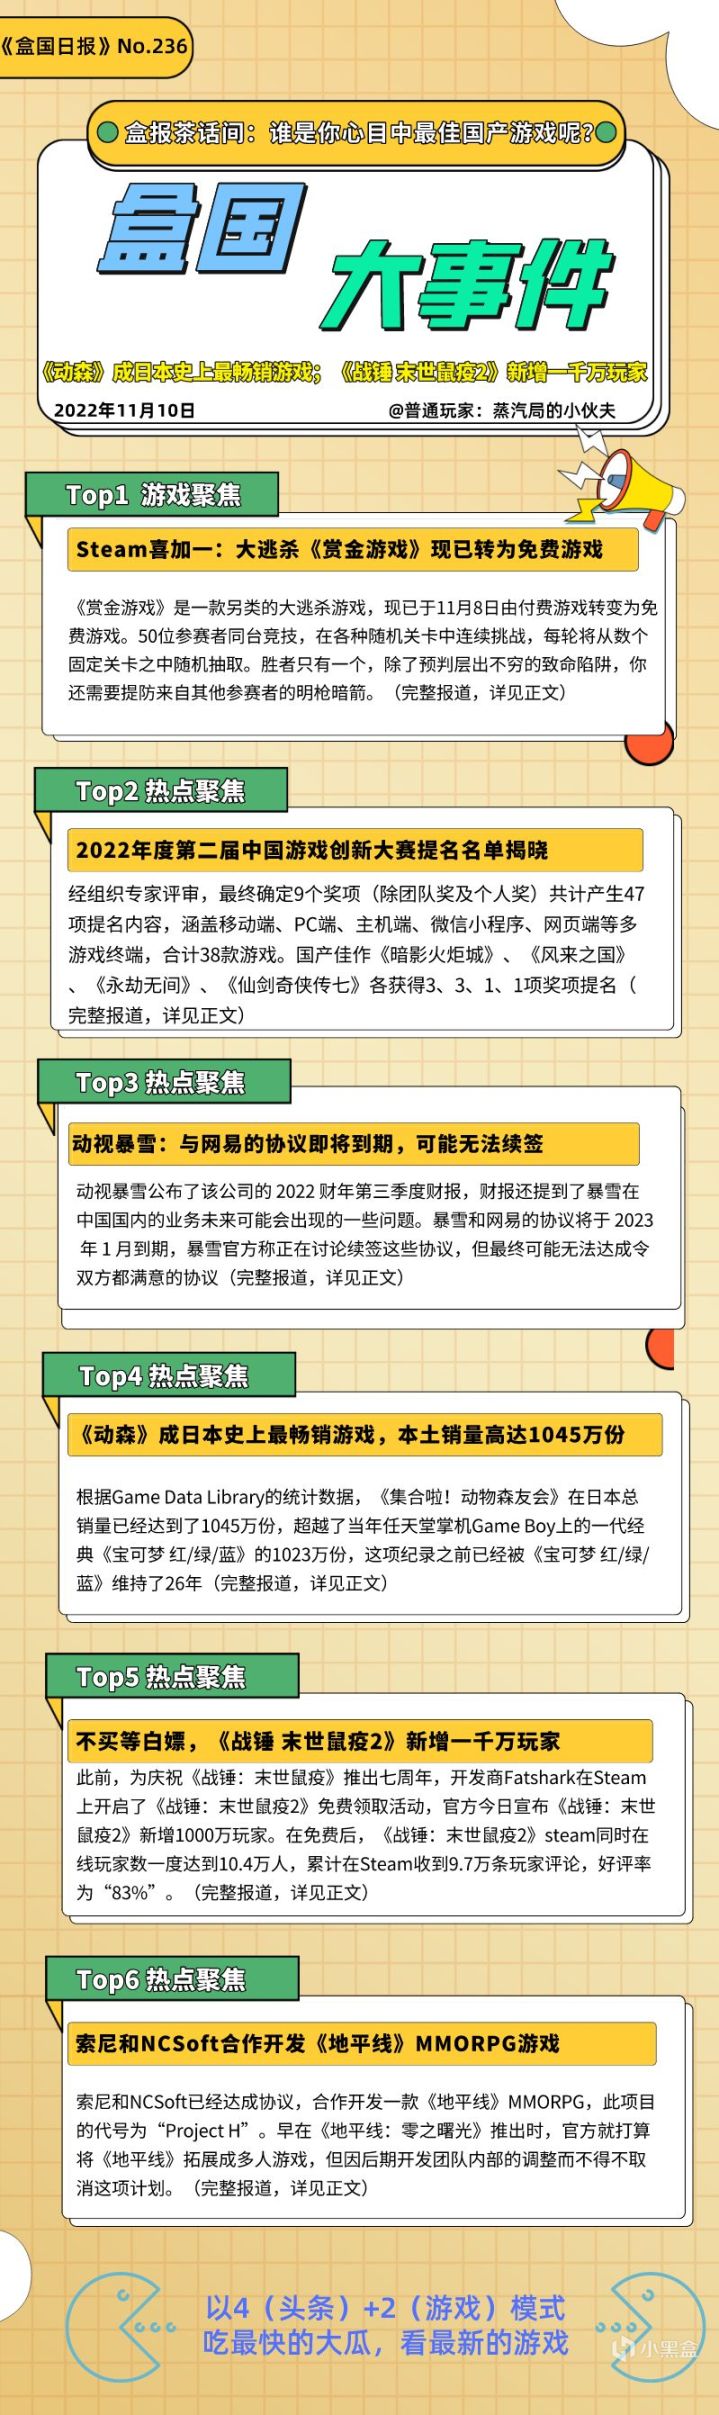 盒国日报|中国游戏创新大赛；《战锤：末世鼠疫2》新增1000万玩家 2%title%